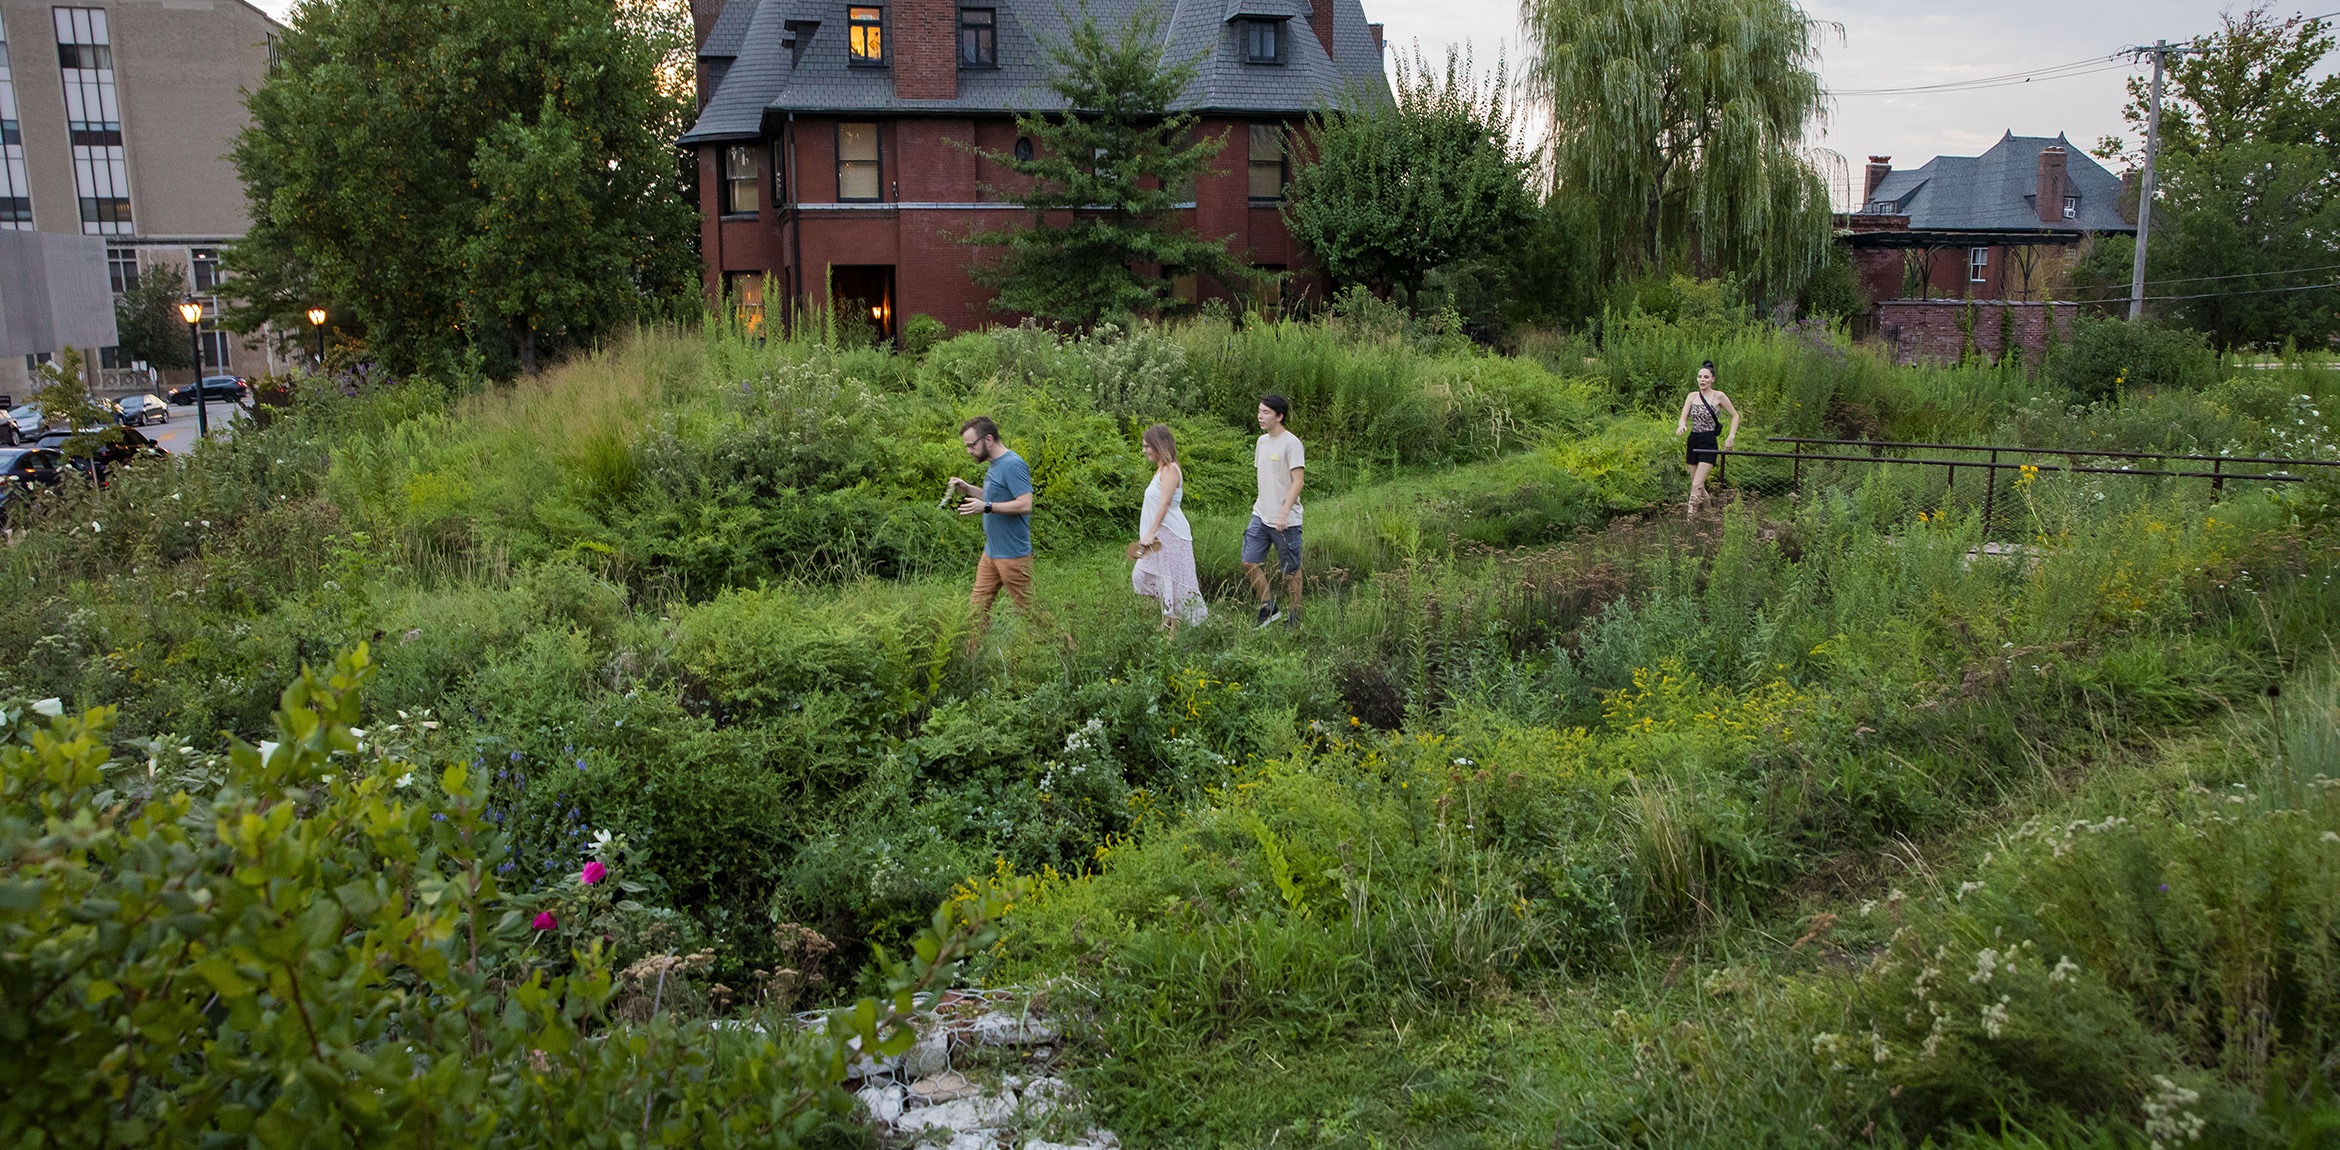 4 people walking across a grassy garden beside a brick house